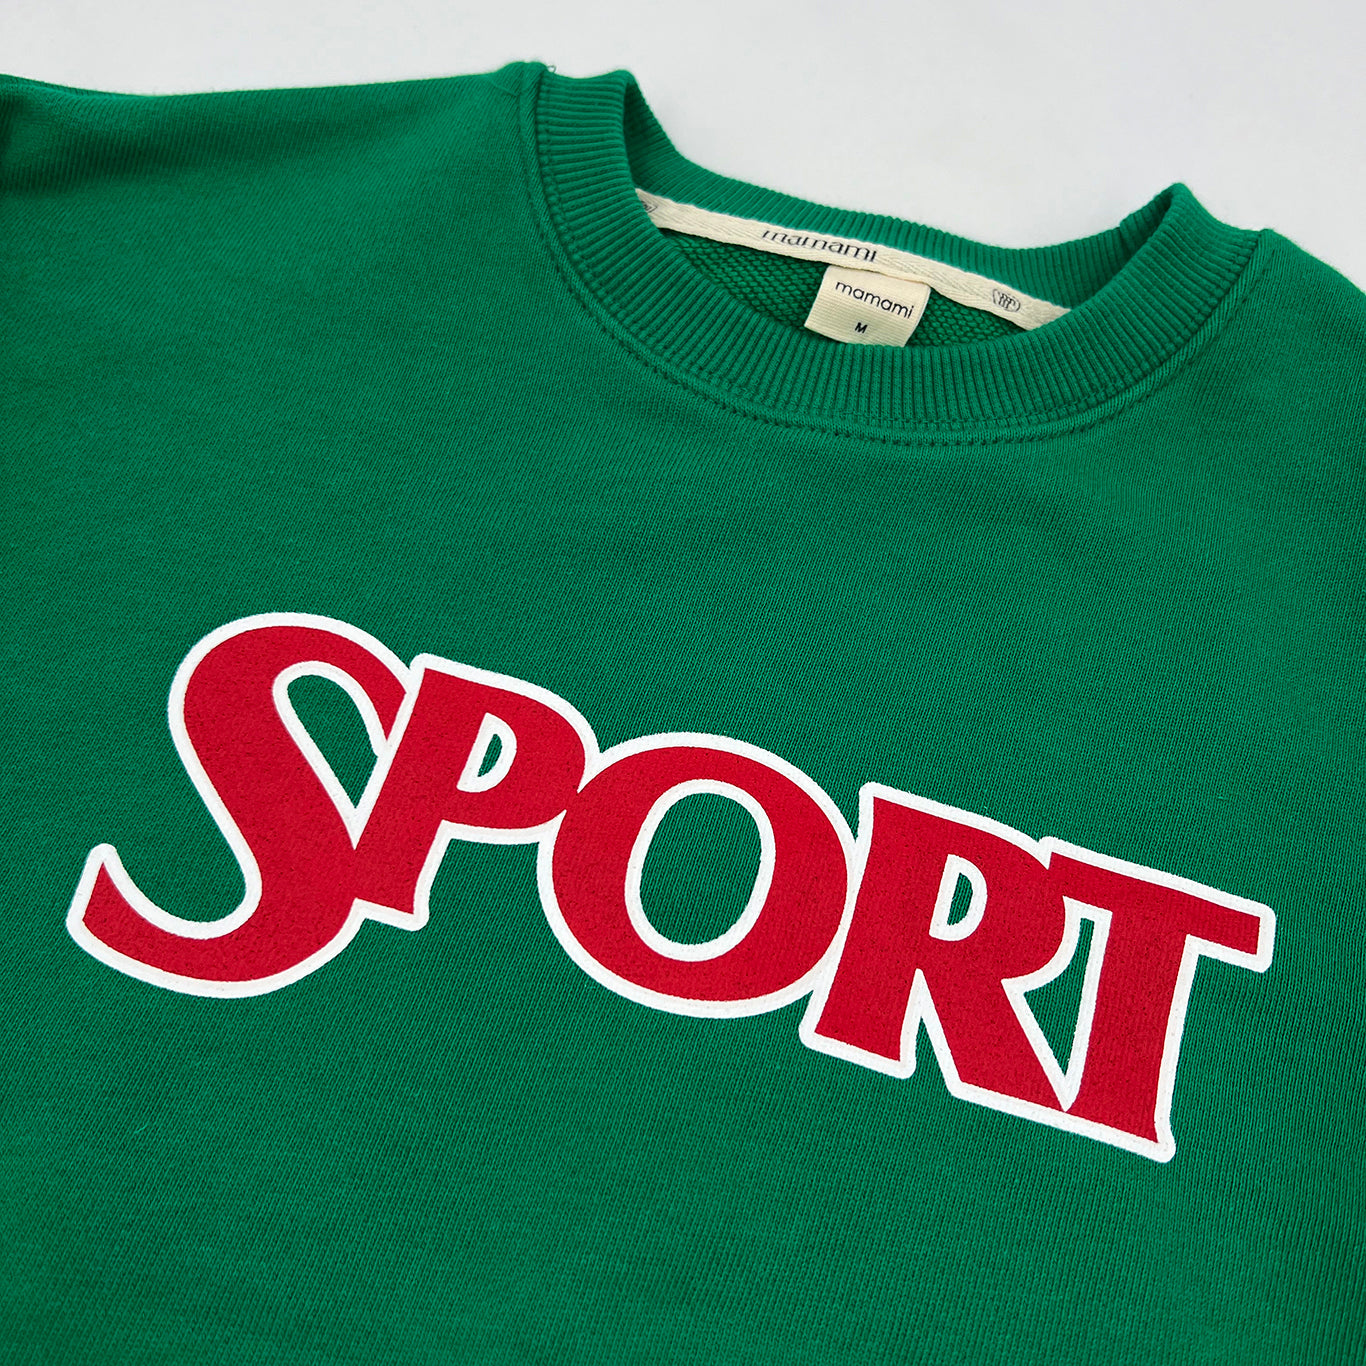 Sport Sweatshirt